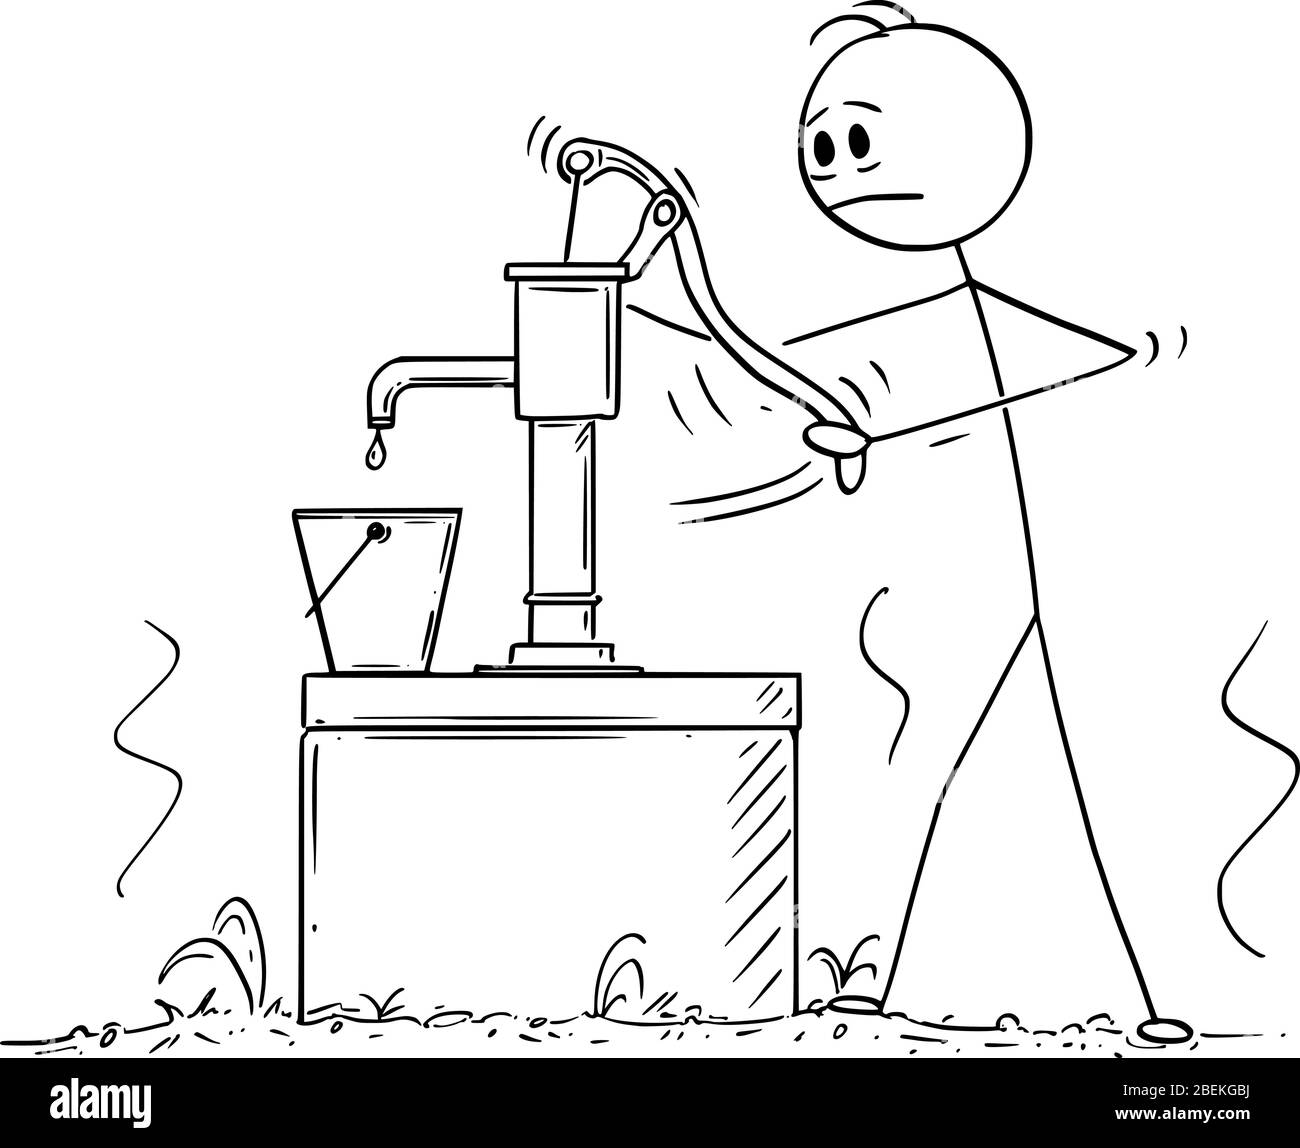 Vektor Cartoon Stick Figur Zeichnung konzeptionelle Illustration von depressiven Mann oder Landwirt versuchen, Pumpen oder Wasser aus leeren Dry gut ziehen Stock Vektor